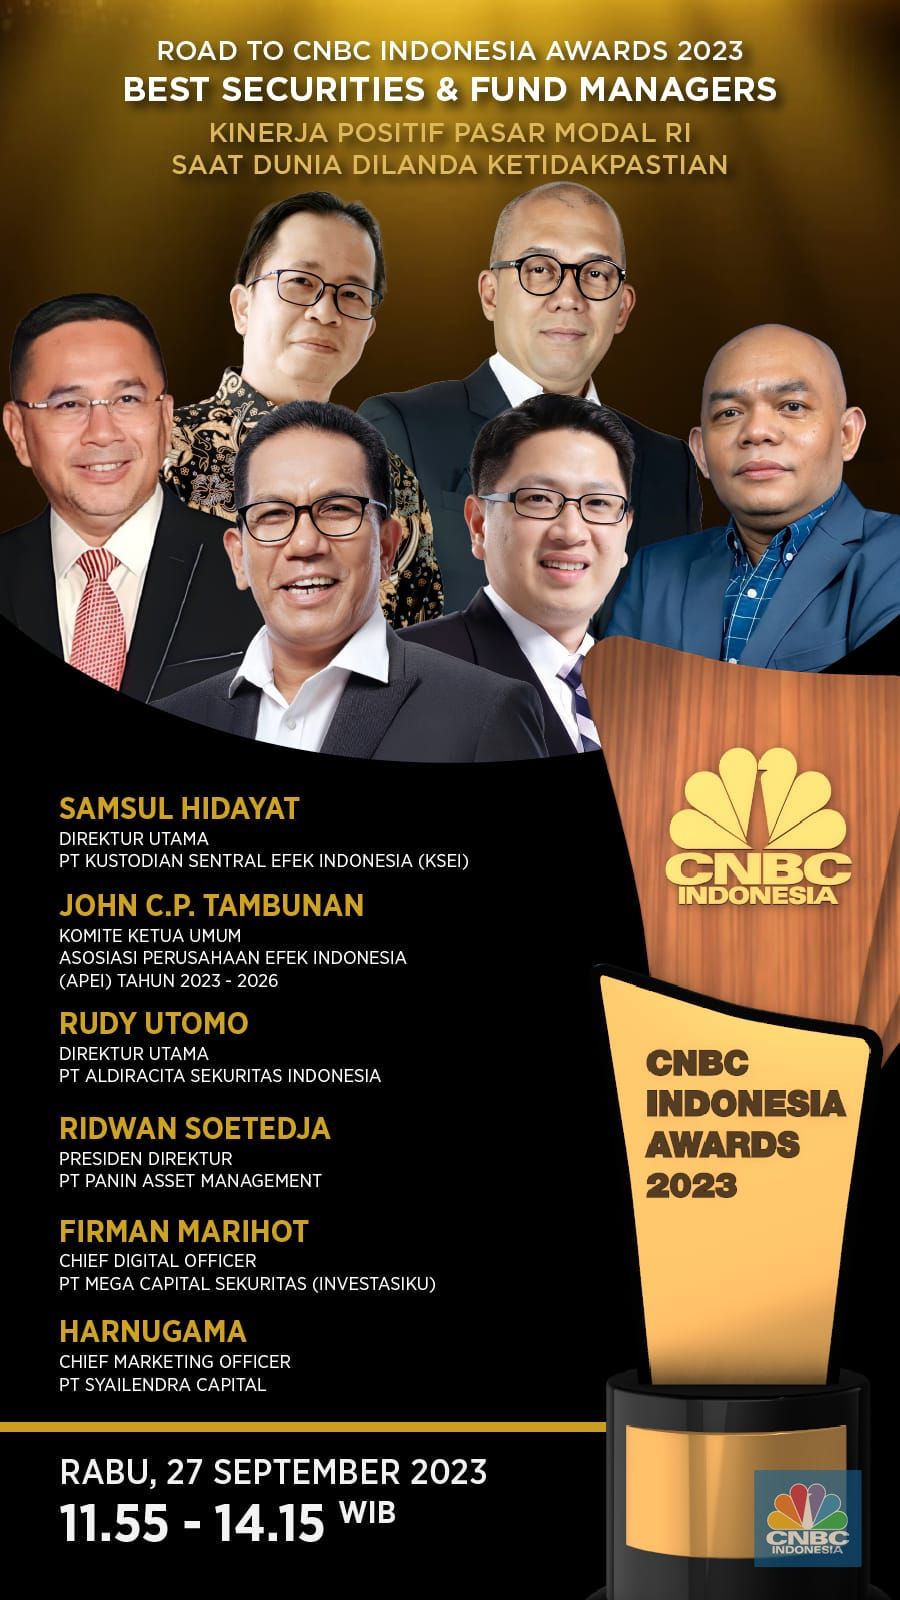 Jalan Menuju CNBC Indonesia Awards 2023